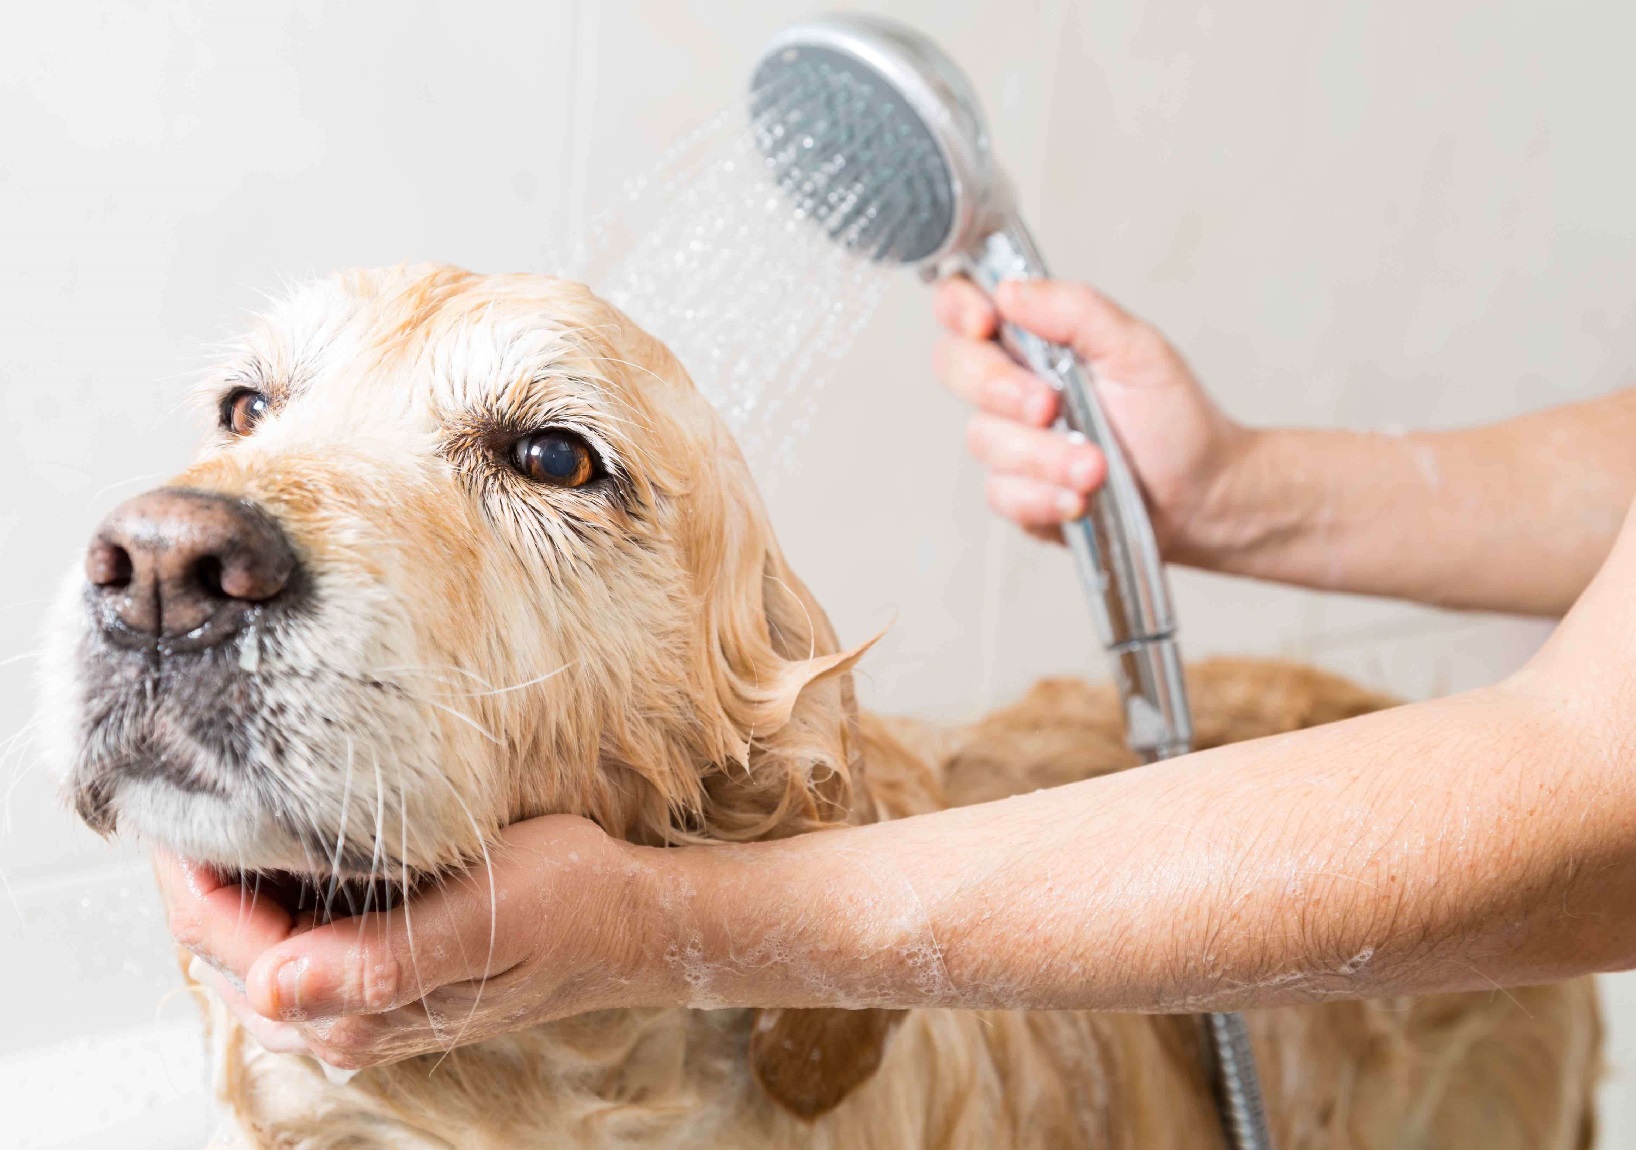 Foto de un perro que se queda quieto mientras lo están bañando